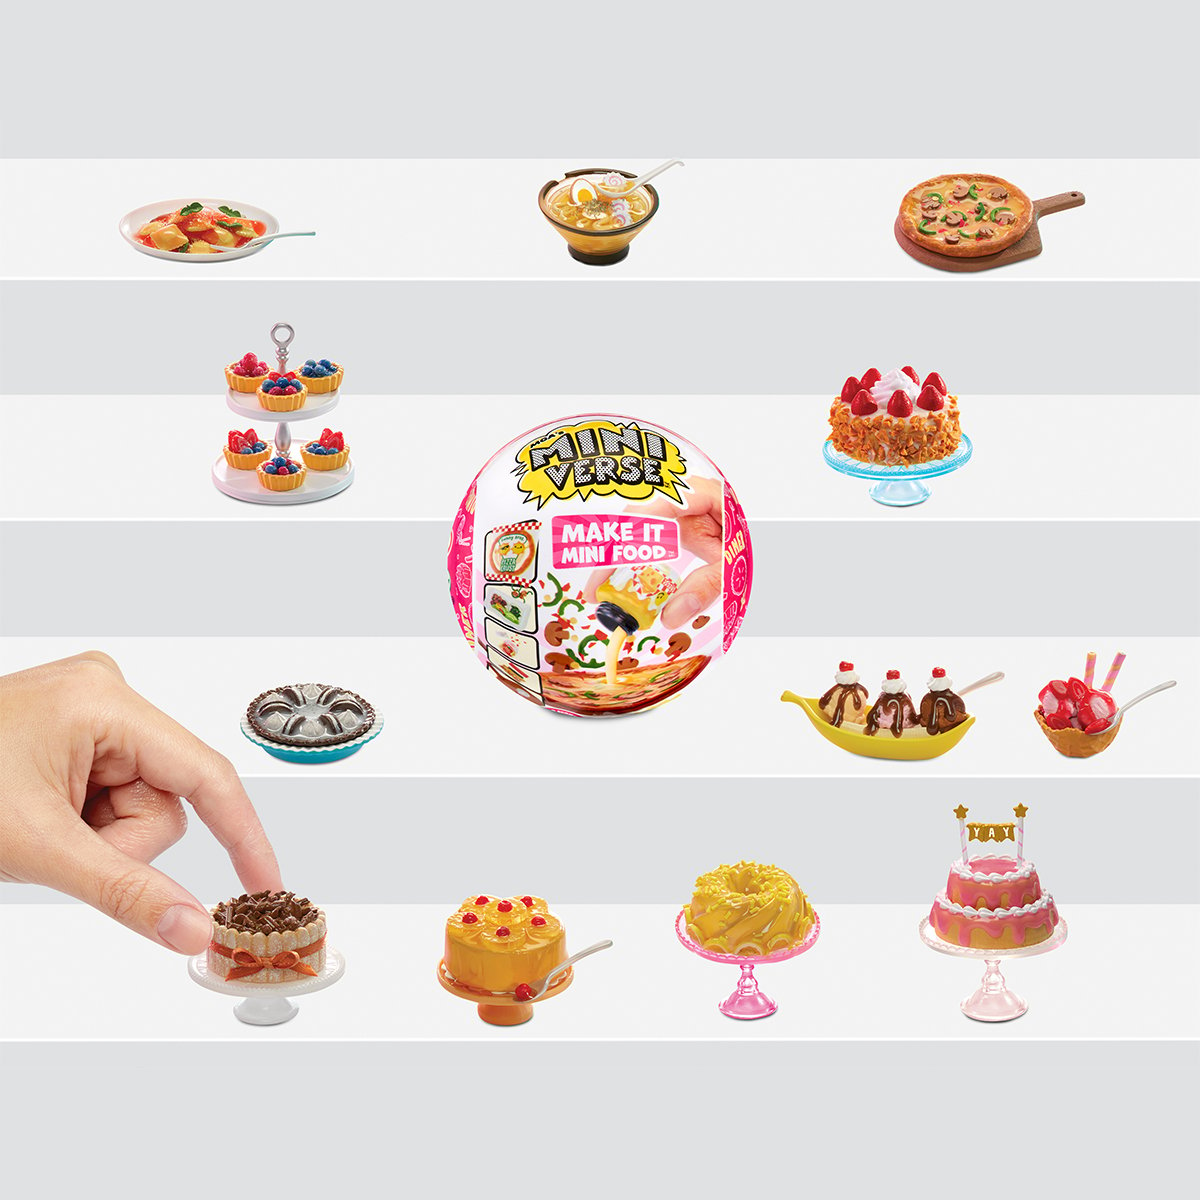 Игровой набор MGA's Miniverse Mini Food Make It (591825) - фото 5